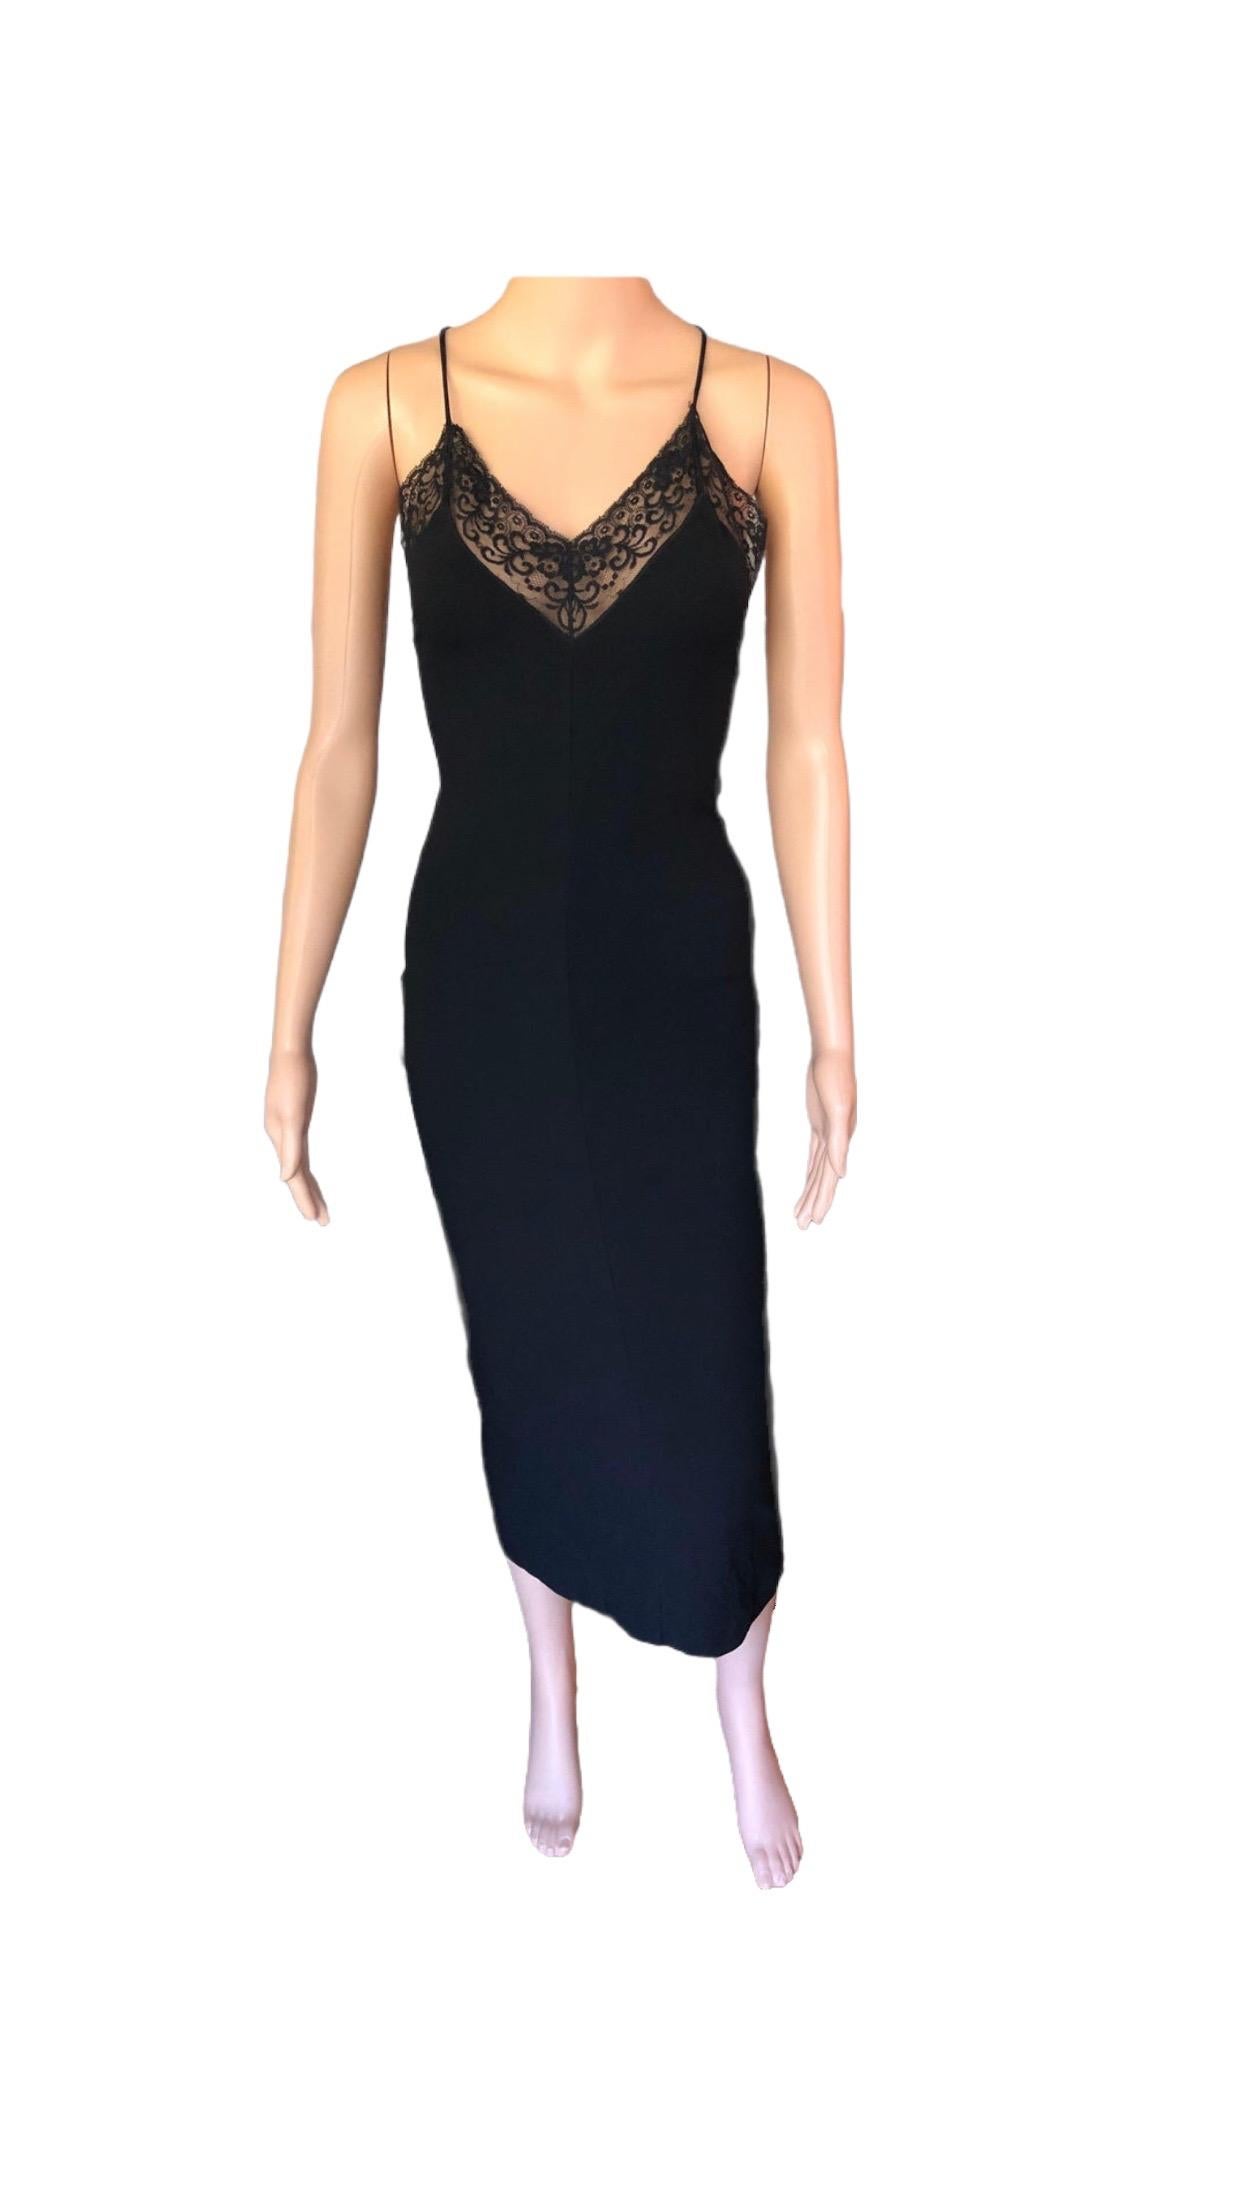 Dolce & Gabbana 1990's Vintage Plunging Neckline Open Back Lace Black Dress For Sale 3